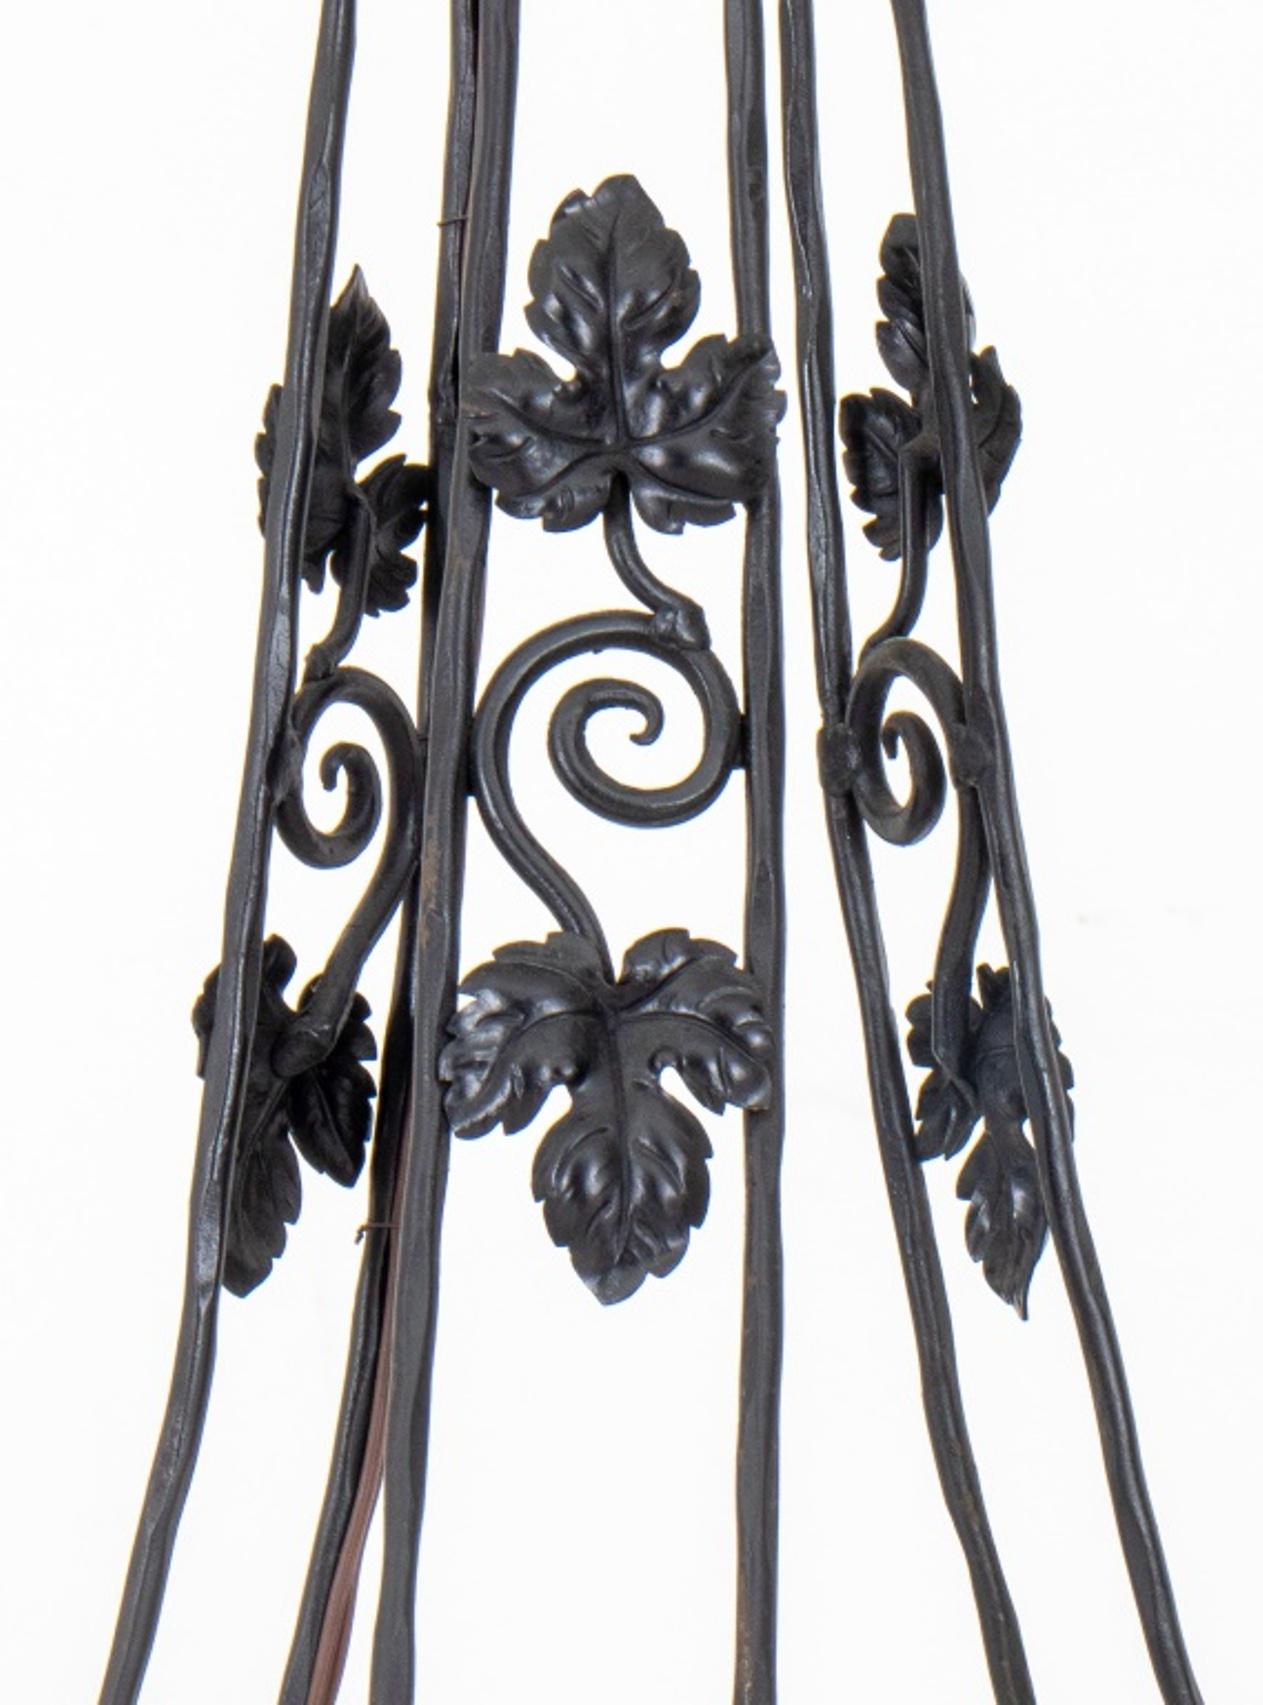 Schmiedeeiserne Flurlaterne im Art Déco-Stil von Muller Freres, mit zentraler mattierter Glasglocke in einer käfigförmigen Kronleuchterfassung mit schmiedeeisernen Efeu- oder Kastanienblattmotiven.

Abmessungen: 38